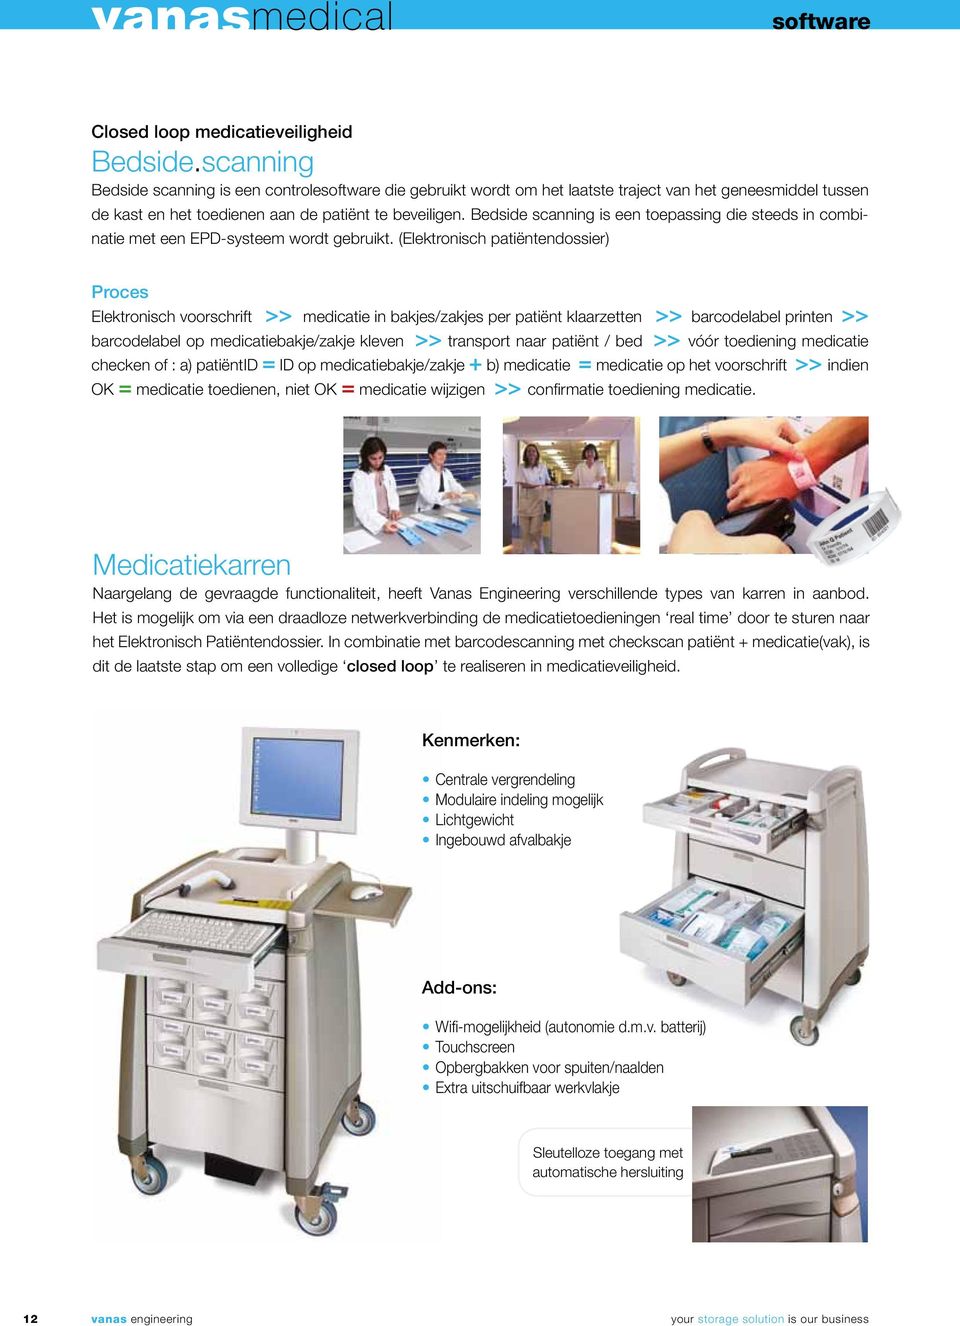 Bedside scanning is een toepassing die steeds in combinatie met een EPD-systeem wordt gebruikt.